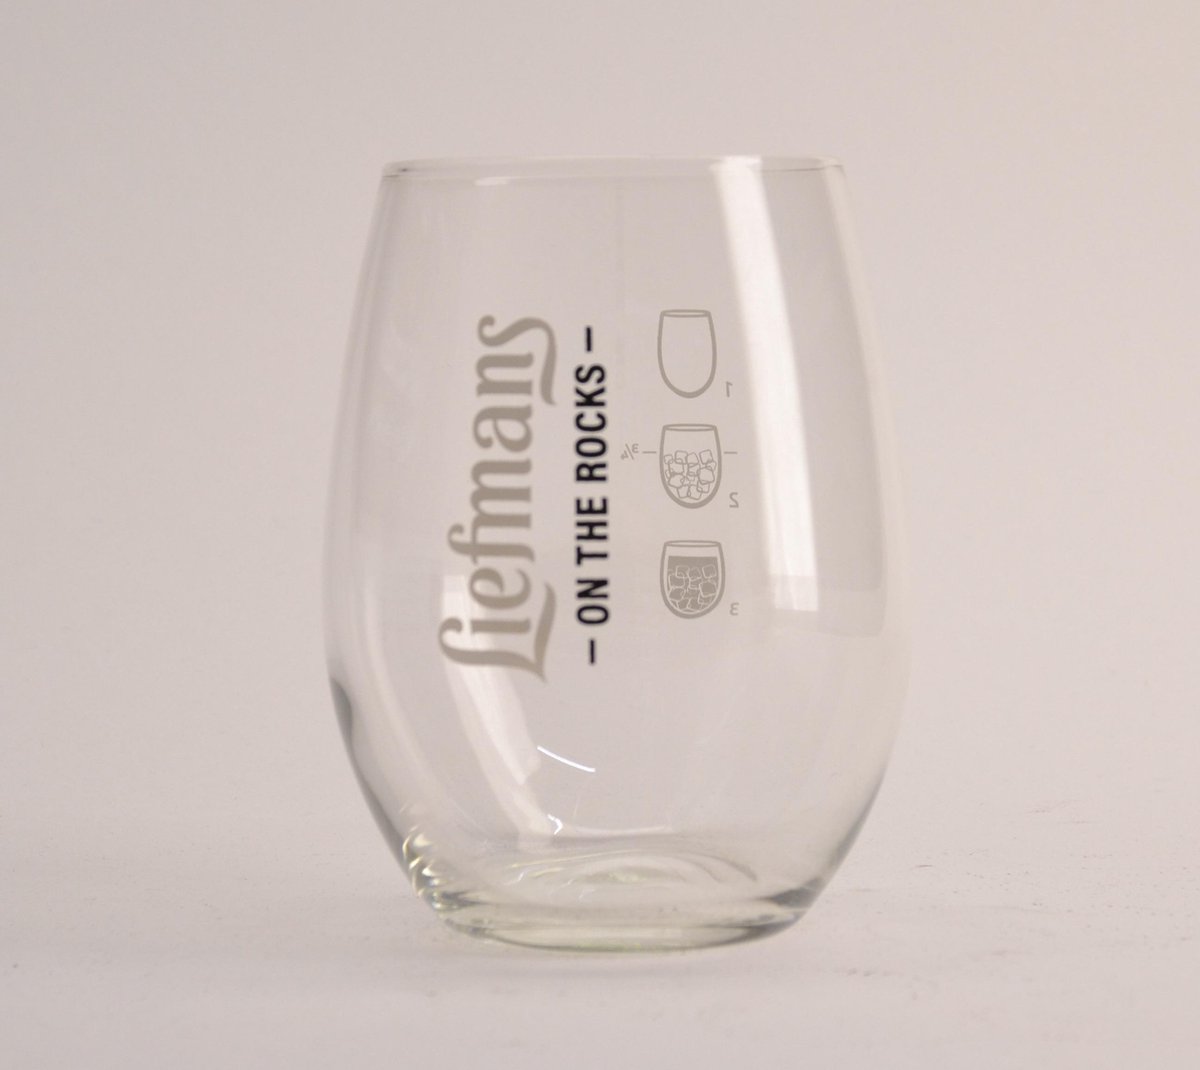 Liefmans On The Rocks Bierglas - 25cl - Origineel glas van de brouwerij - Nieuw